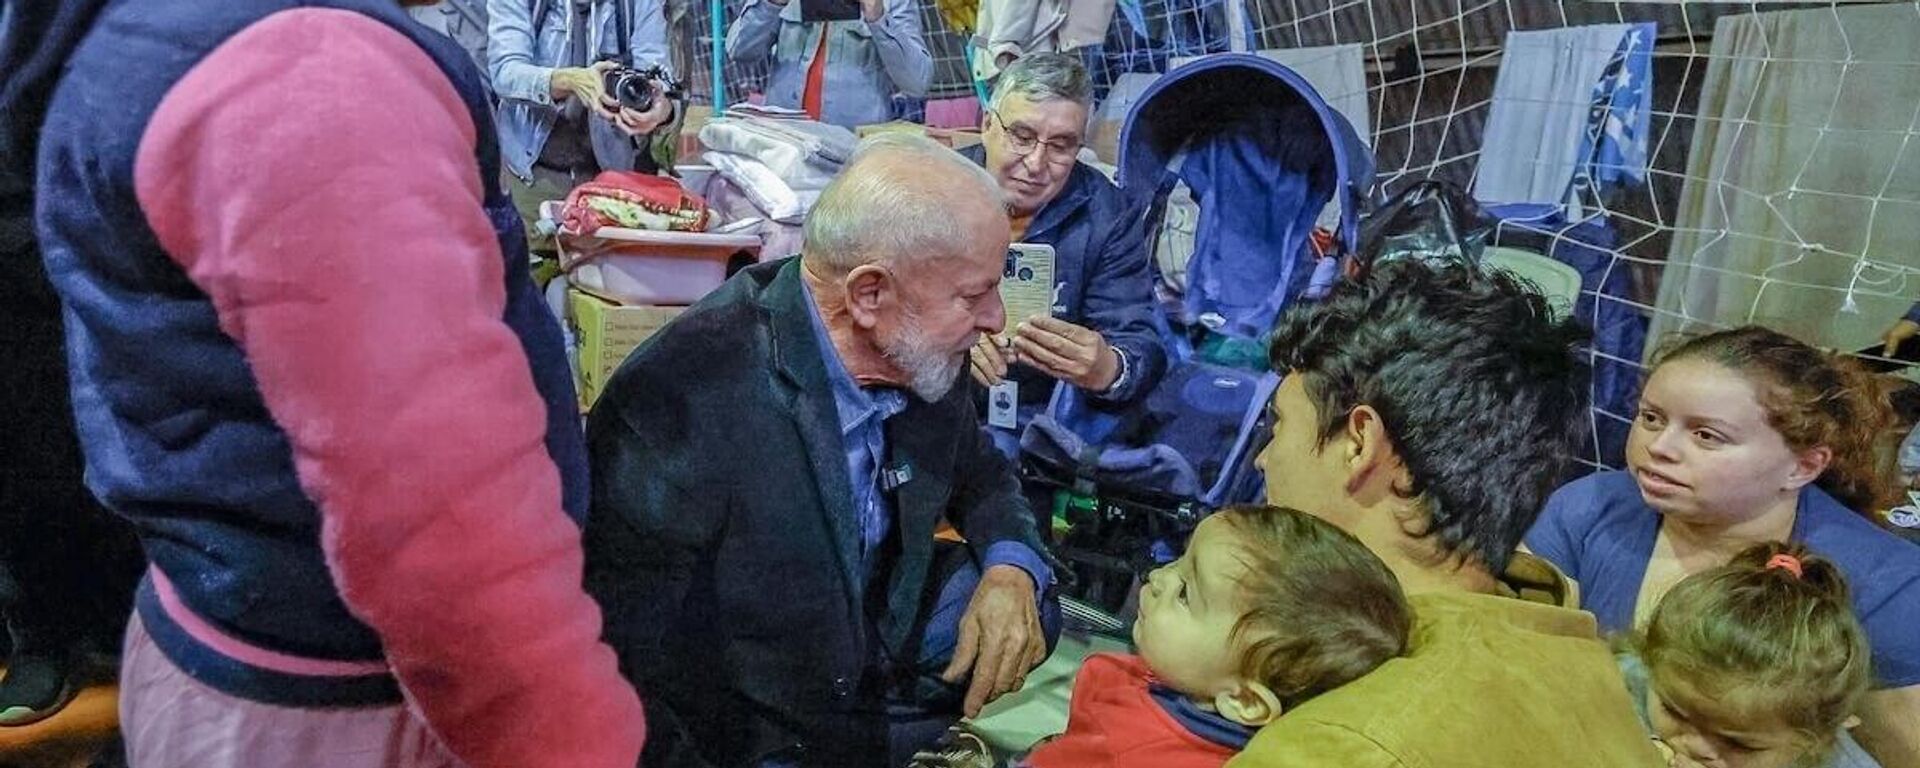 O presidente Luiz Inácio Lula da Silva, durante visita a abrigo em São Leopoldo (RS), conversa com vítimas de inundações, em maio de 2024 - Sputnik Brasil, 1920, 29.05.2024